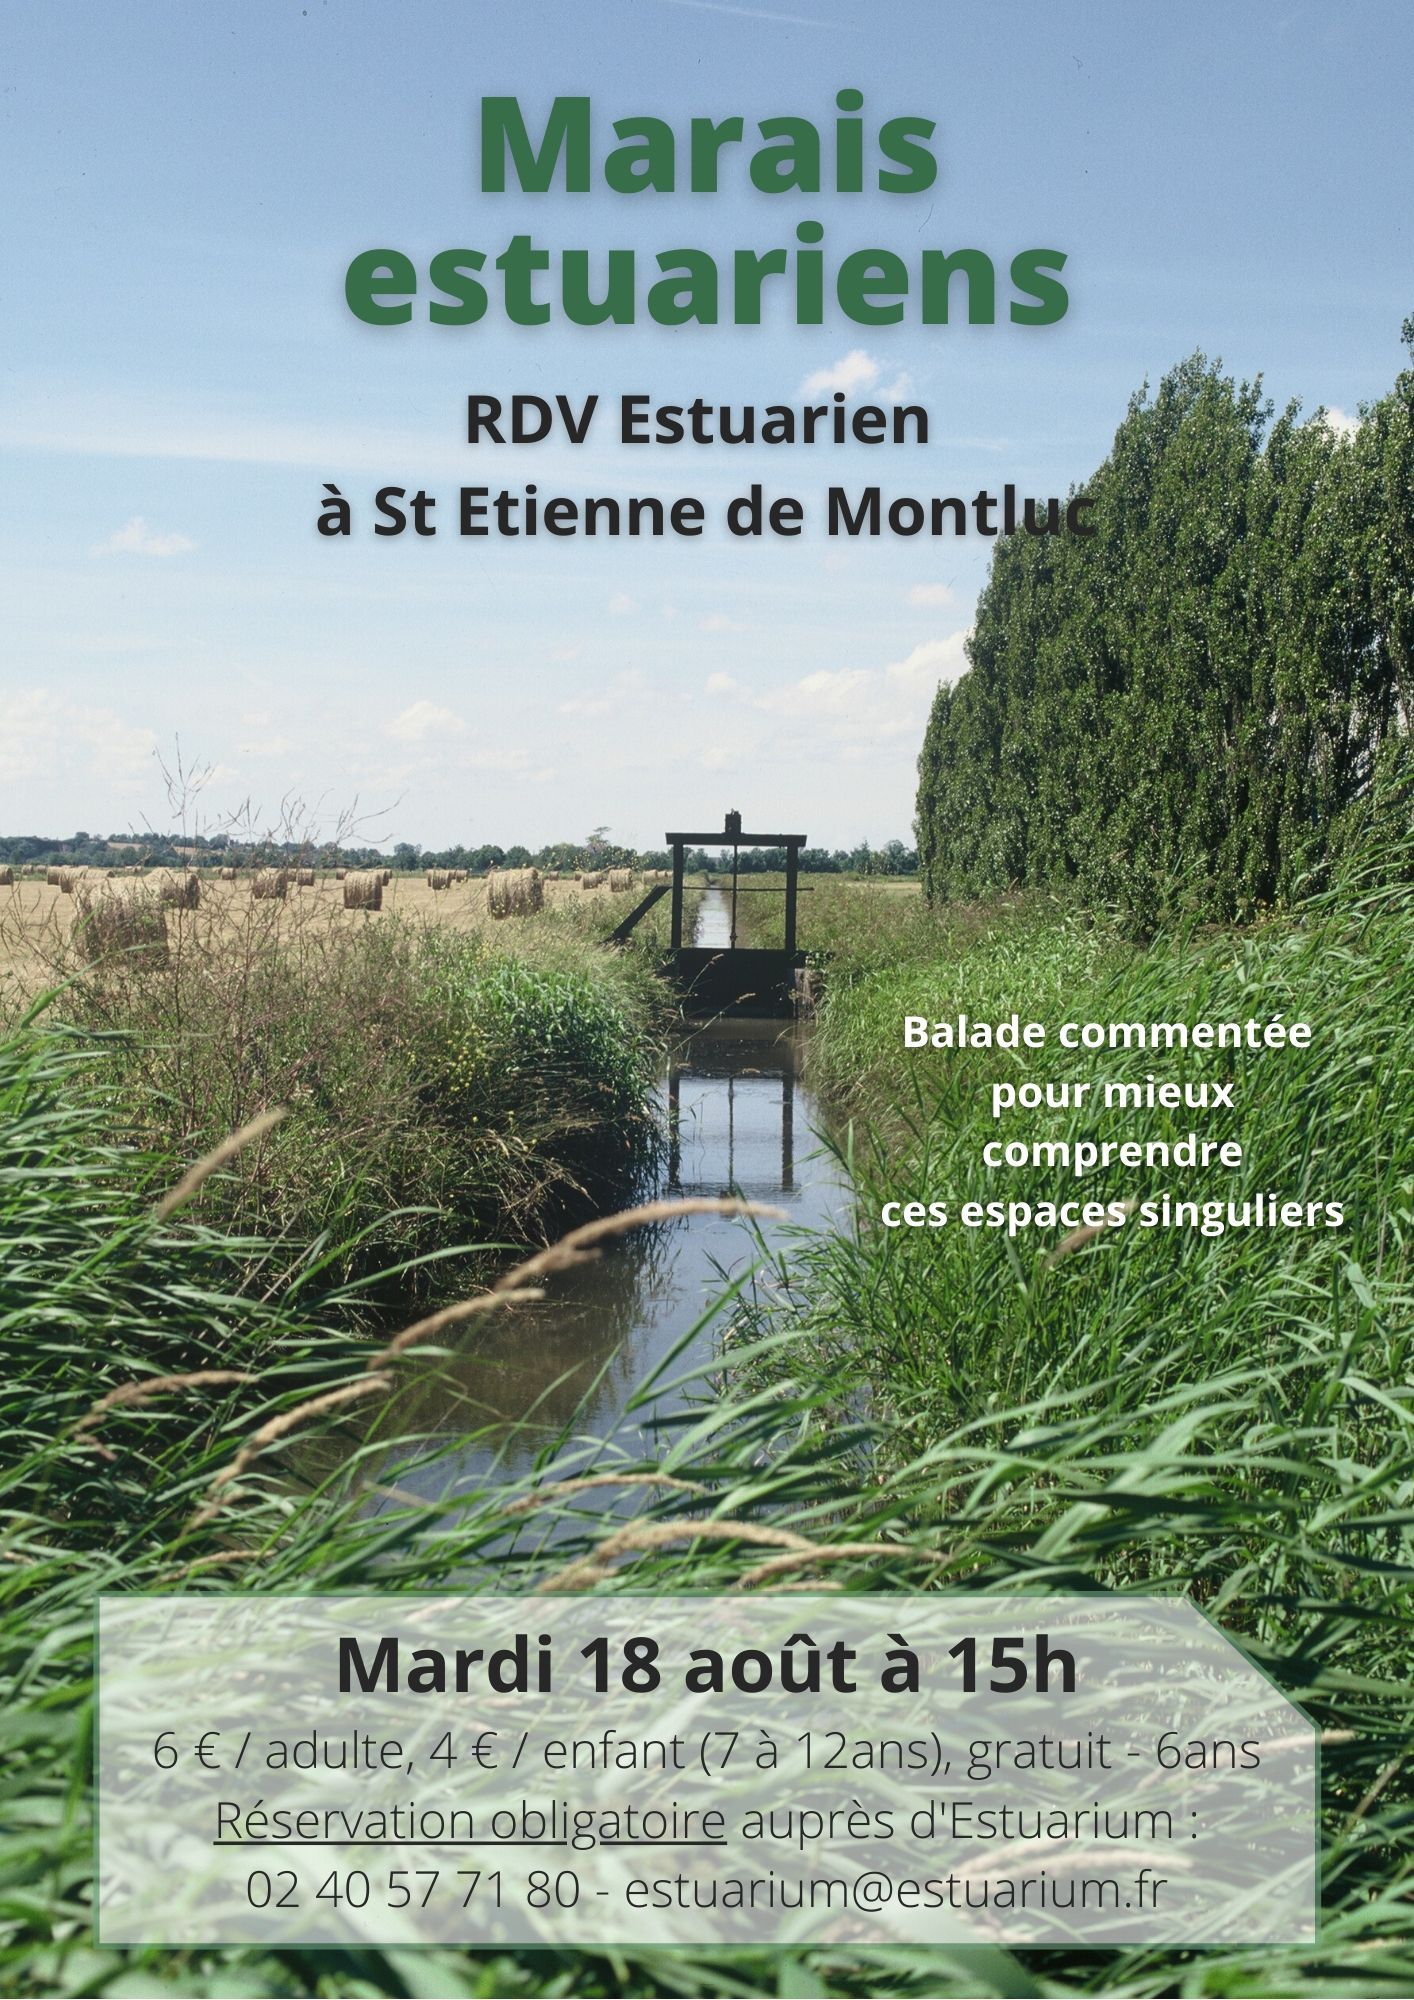 RDV Estuarien aout 2020 - Marais estuariens - ST ETIENNE